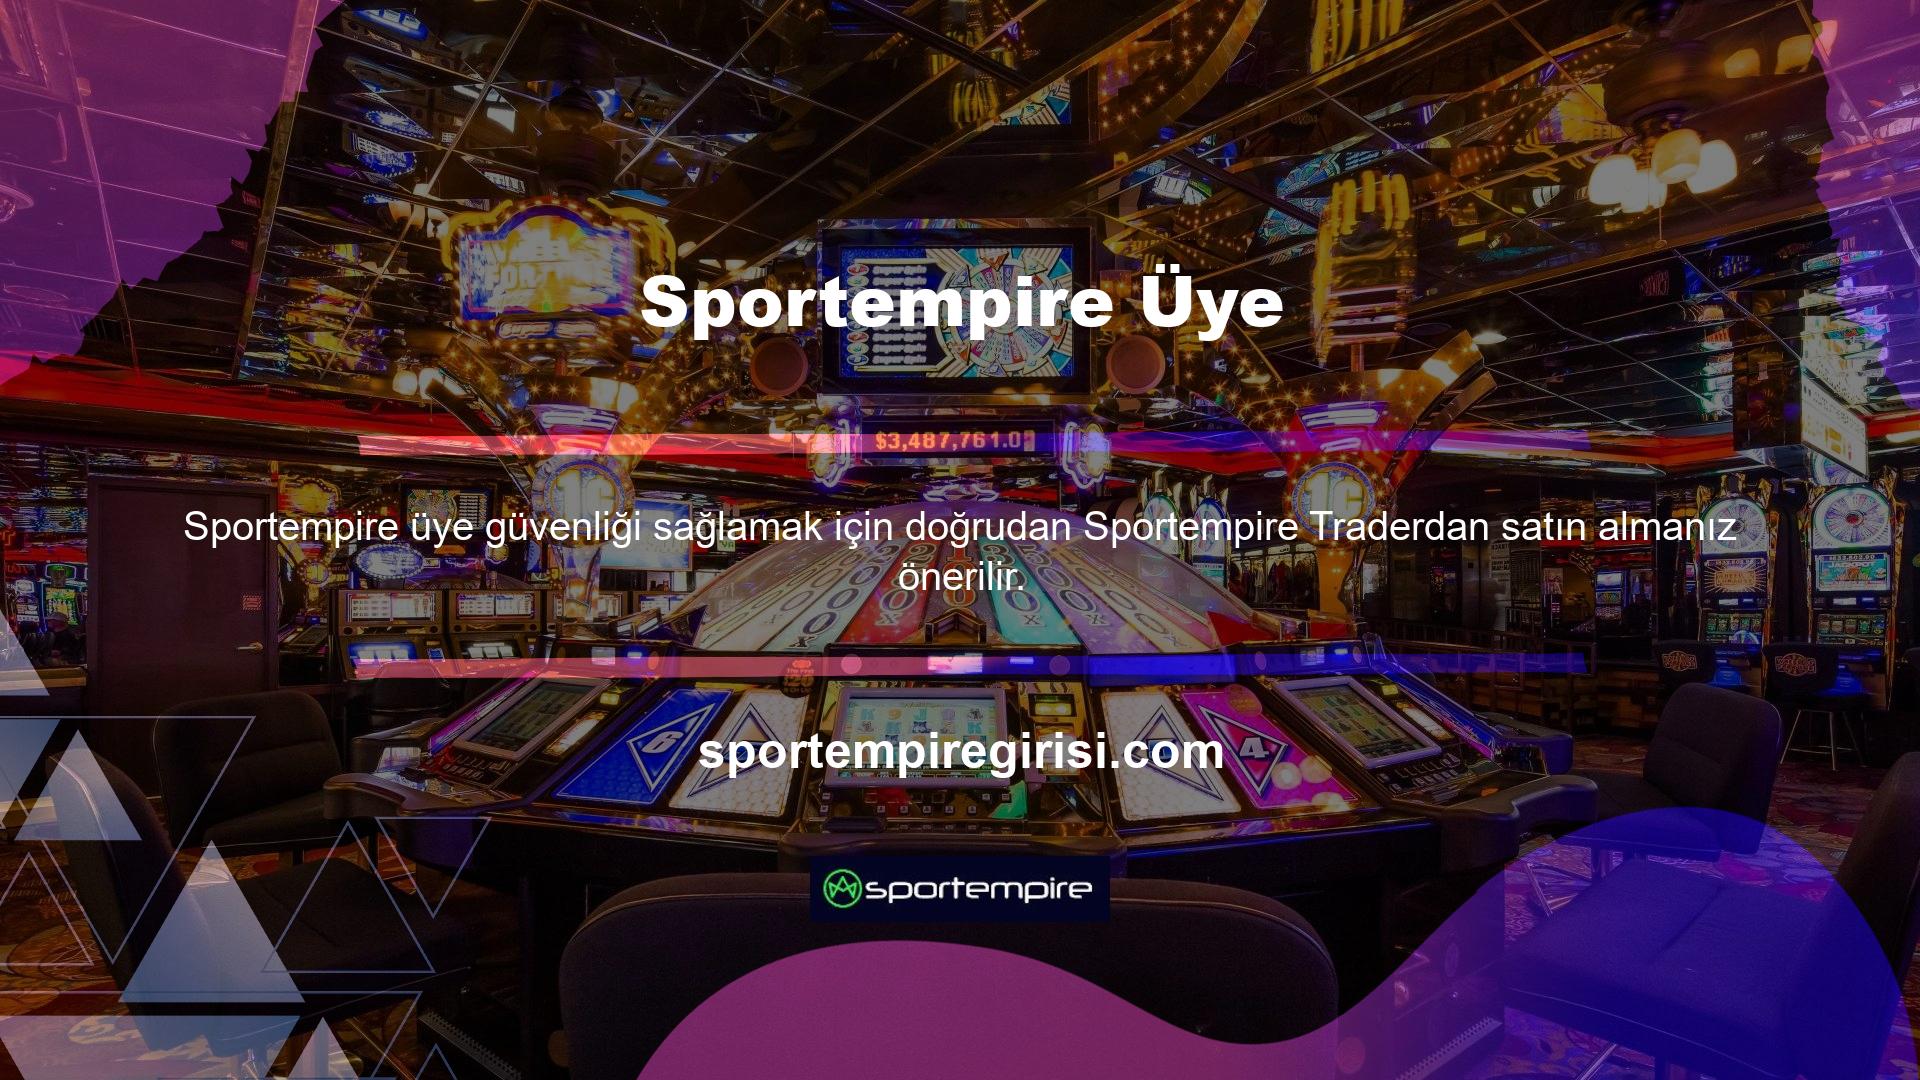 Zaten Sportempire oturum açma bilgileriniz varsa, siteye bilgisayarınızdan veya mobil cihazınızdan zahmetsizce erişebilirsiniz